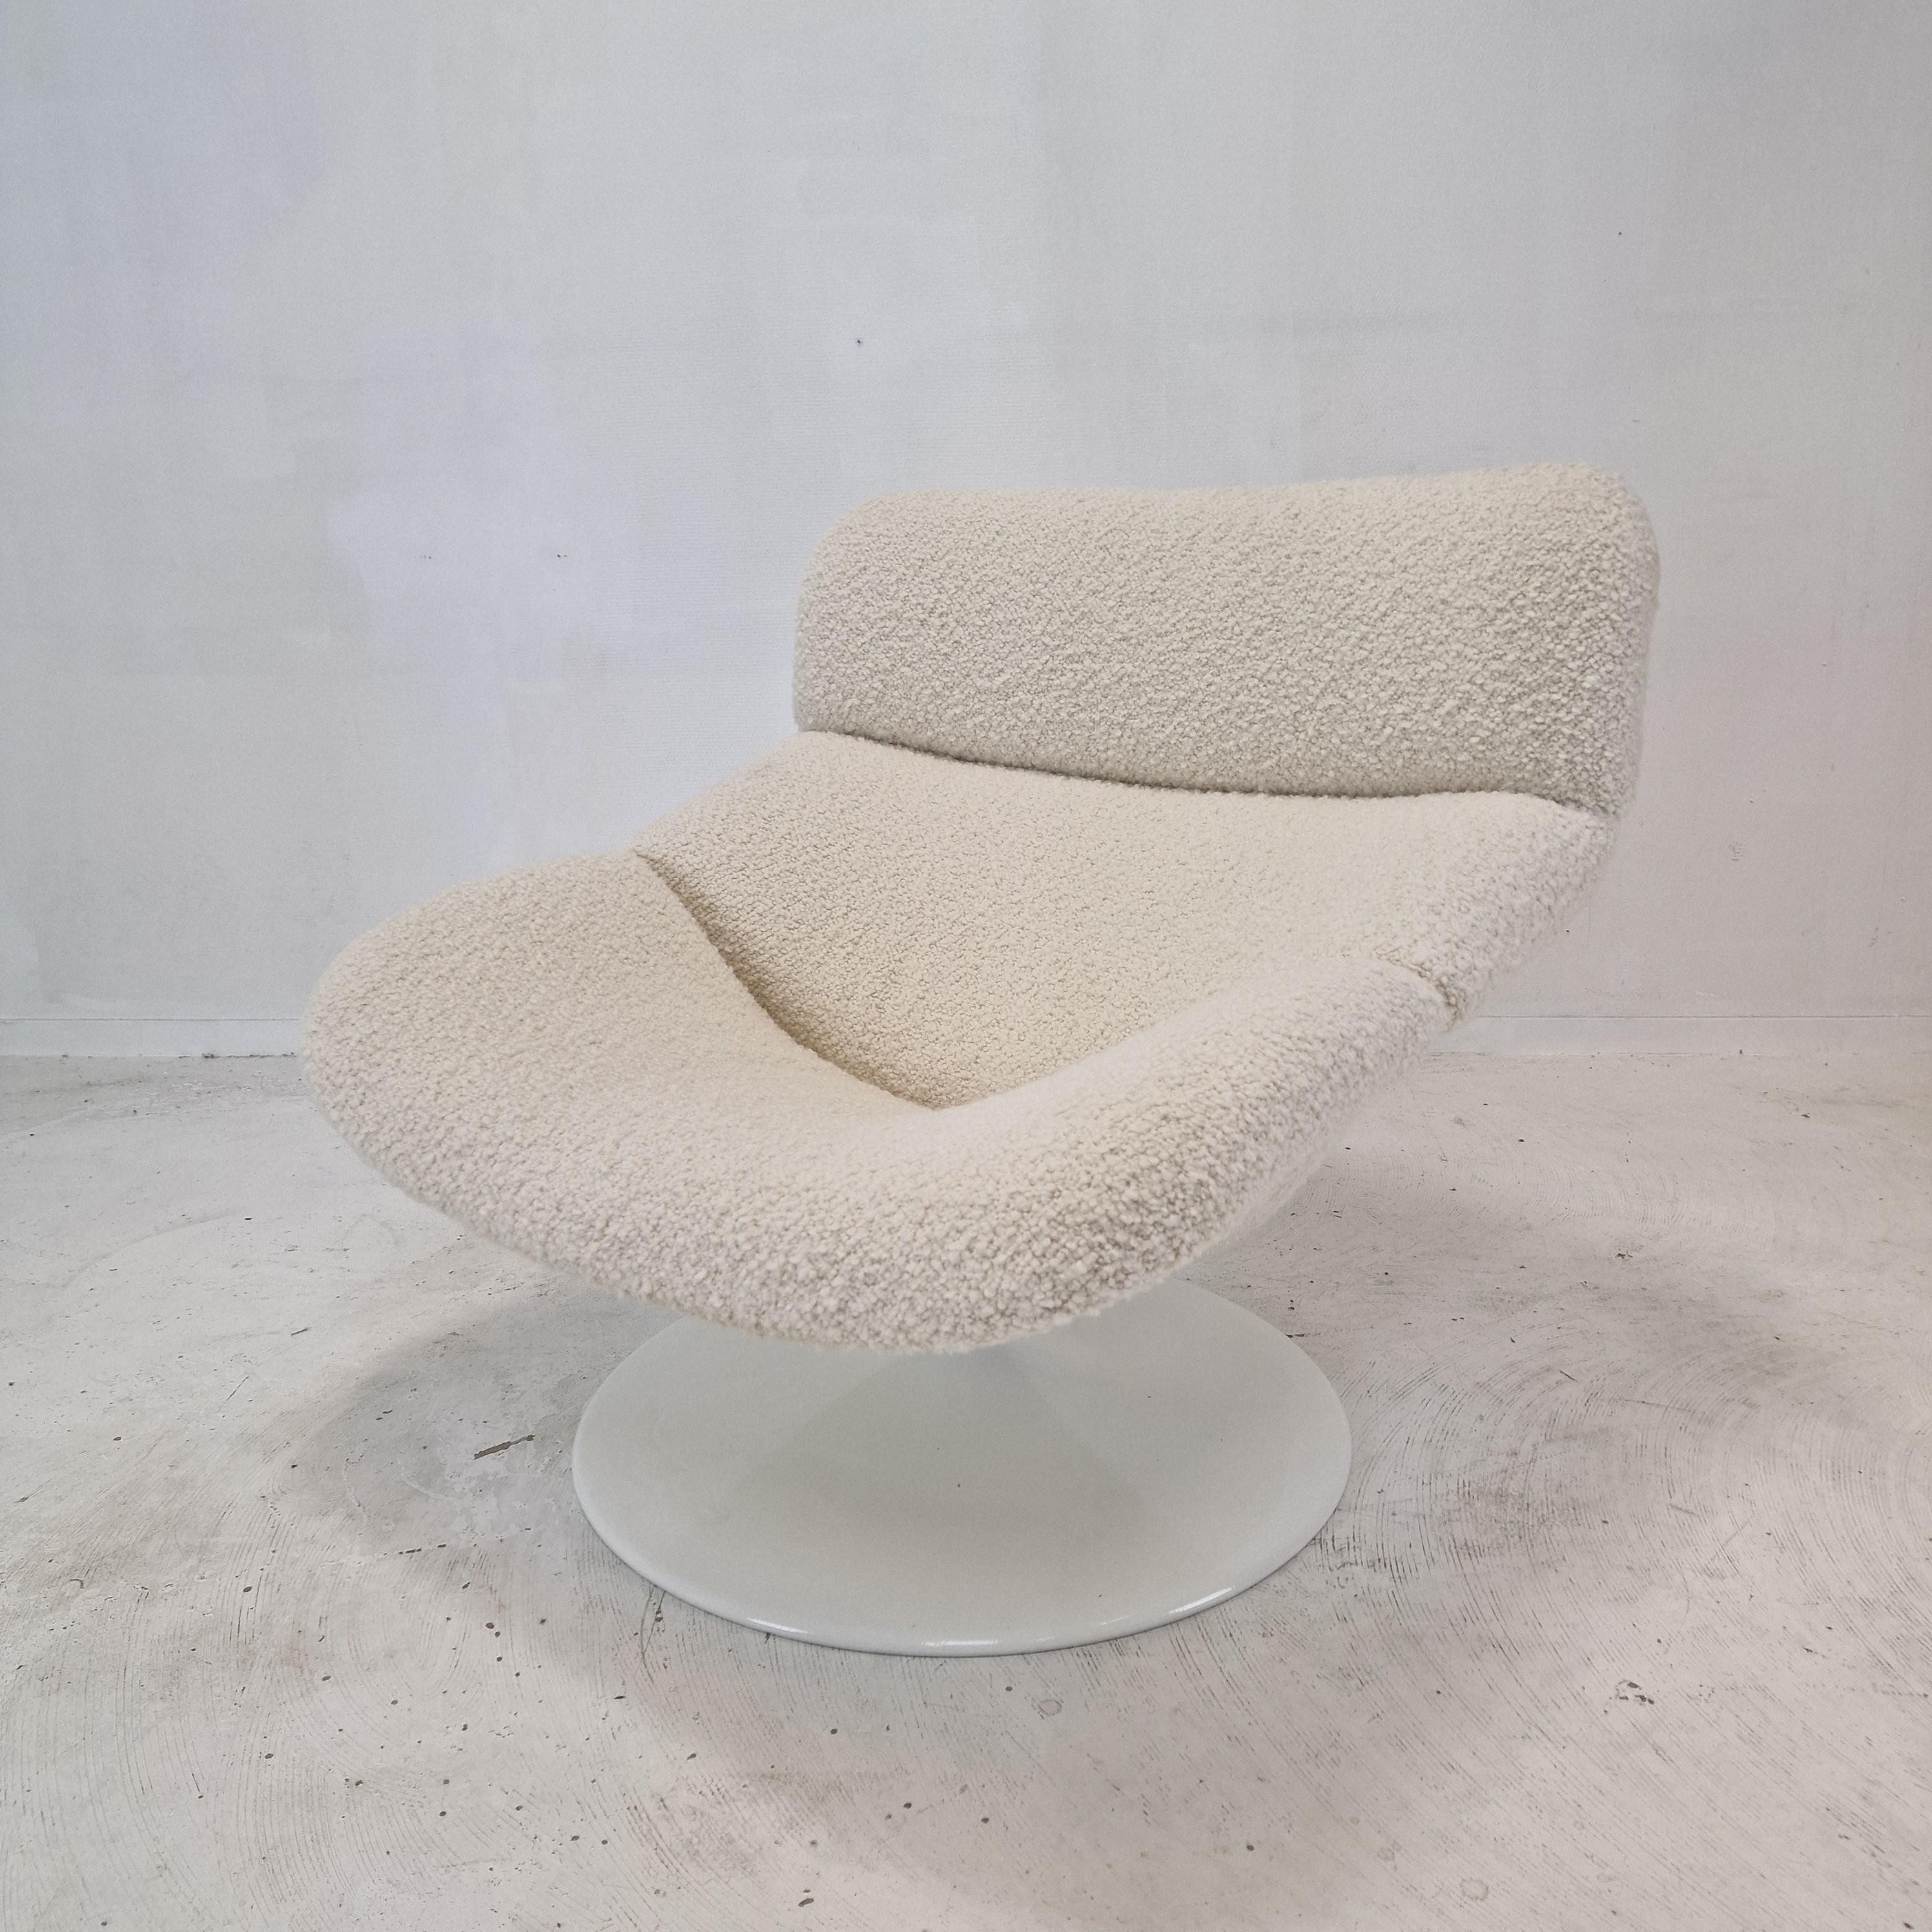 Chaise longue Artifort F518 extrêmement confortable. 
Conçu par le célèbre designer anglais Geoffrey Harcourt dans les années 70. 

Cadre en bois très solide avec un grand pied métallique pivotant.

La chaise est juste tapissée d'un très beau